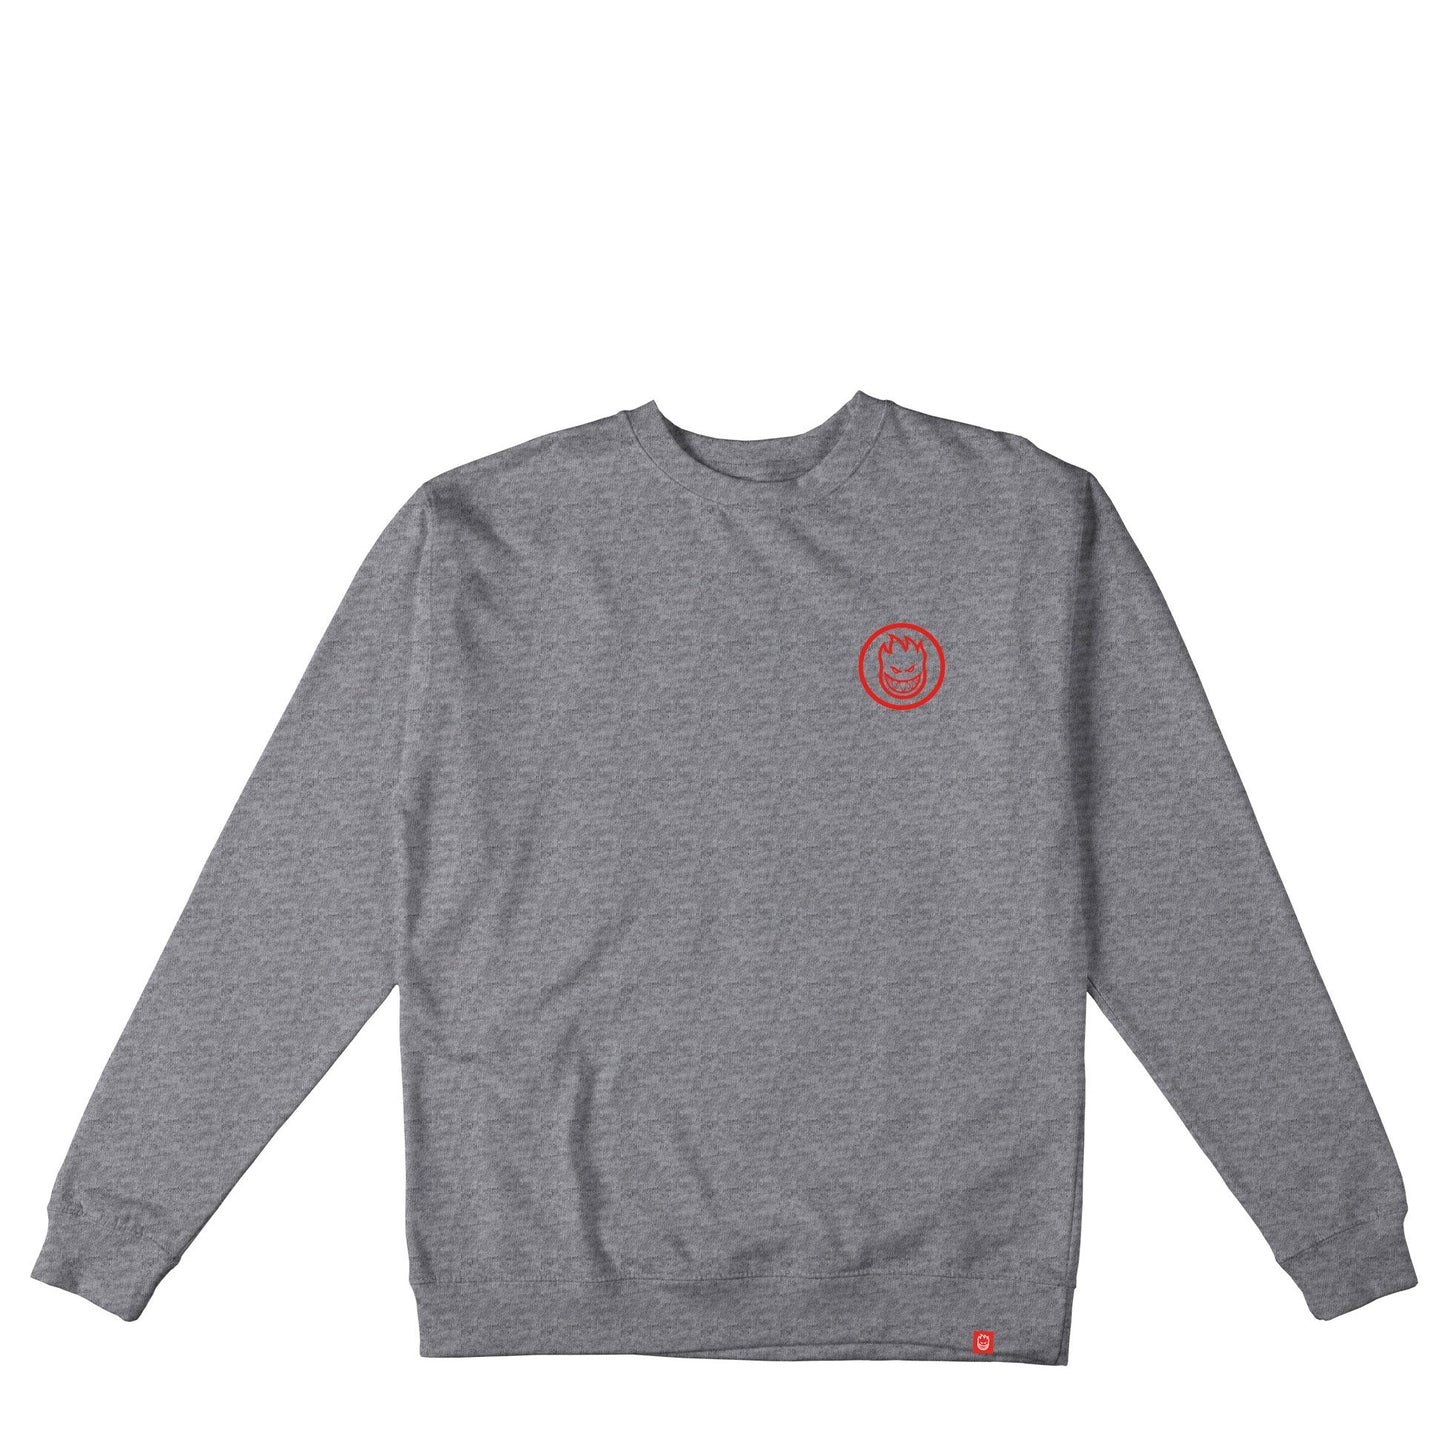 Spitfire Swirled Classic Crewneck Sweatshirt, grey heather w red prints - Tiki Room Skateboards - 2